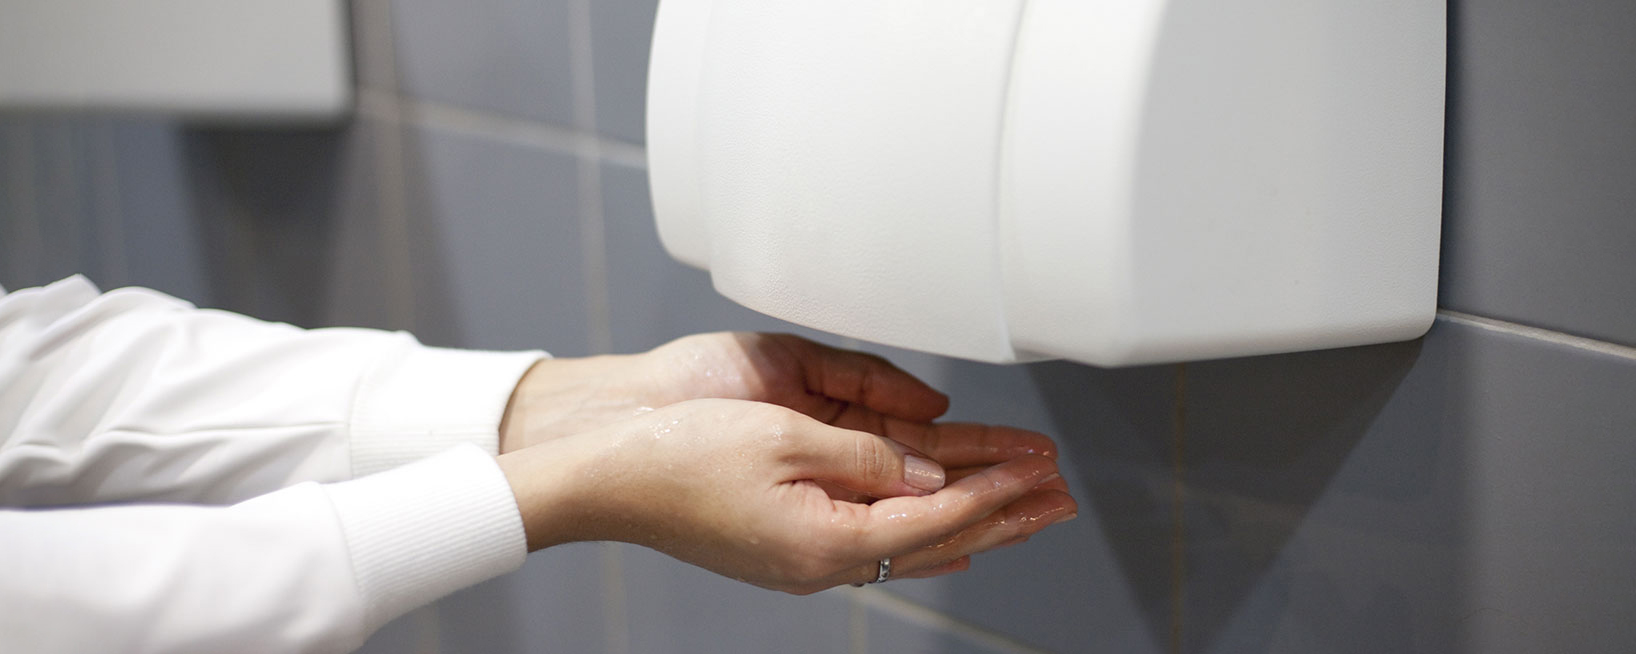 На руках можно применять. Сушилка hand Dryer. Сушилка для рук в общественном туалете. Сушилка для рук в санузле. Бумажная сушилка для рук.